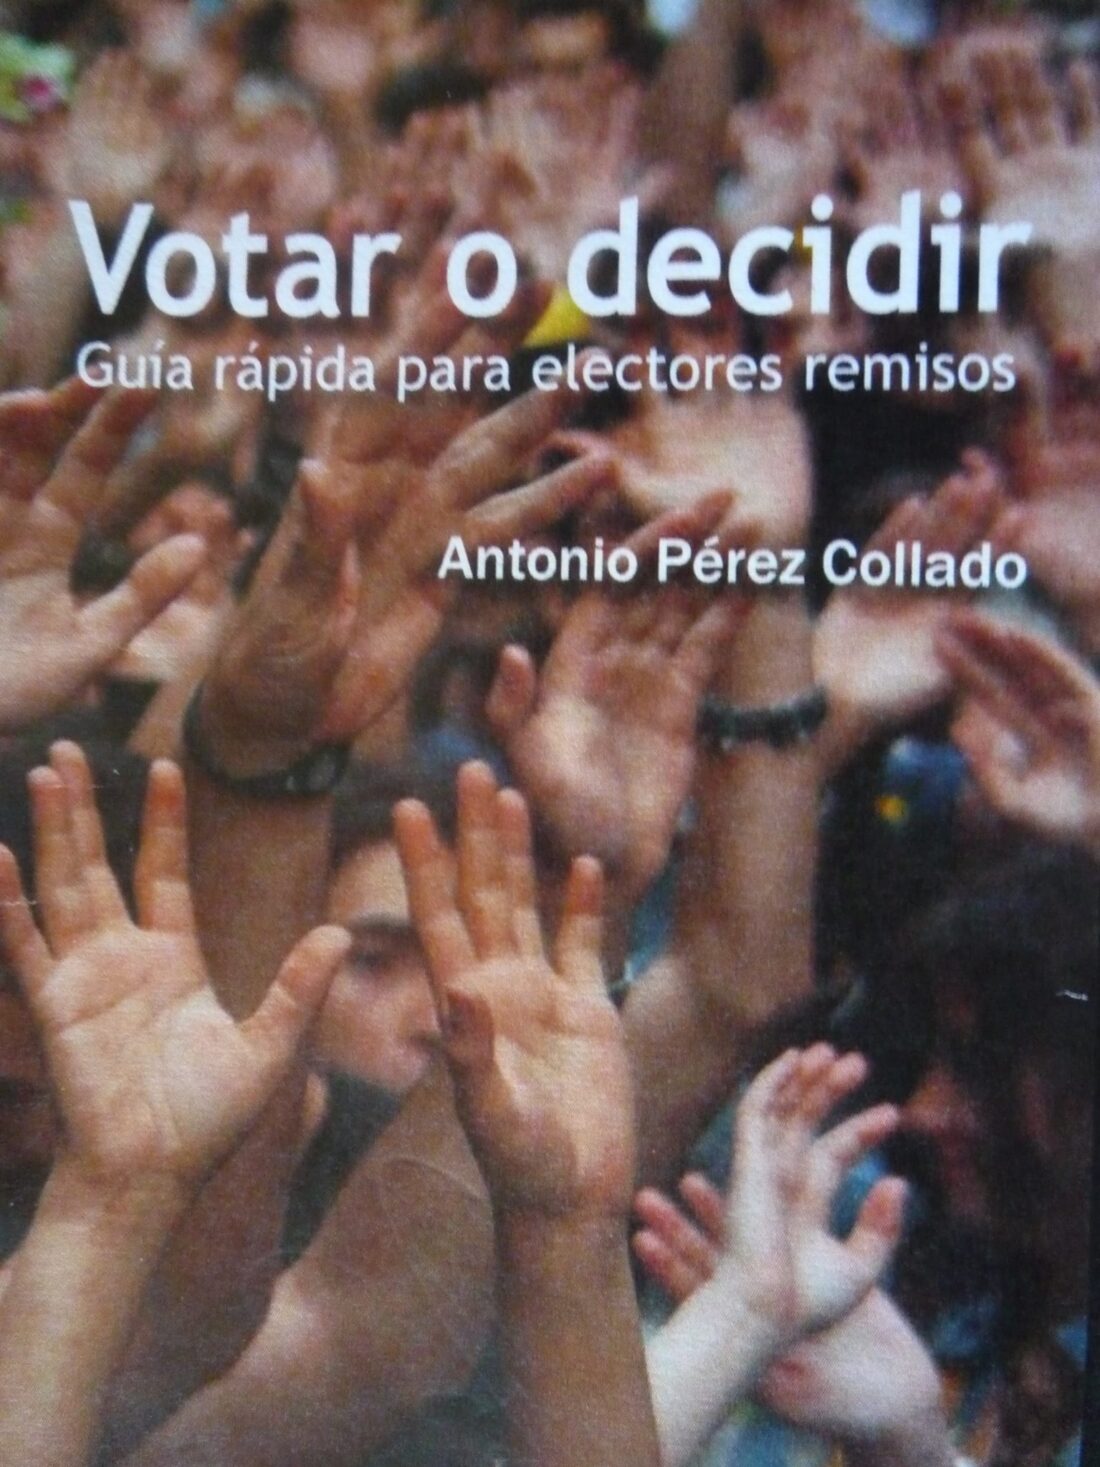 Presentaciones del libro «Votar o decidir» de Antonio Pérez Collado en Valencia